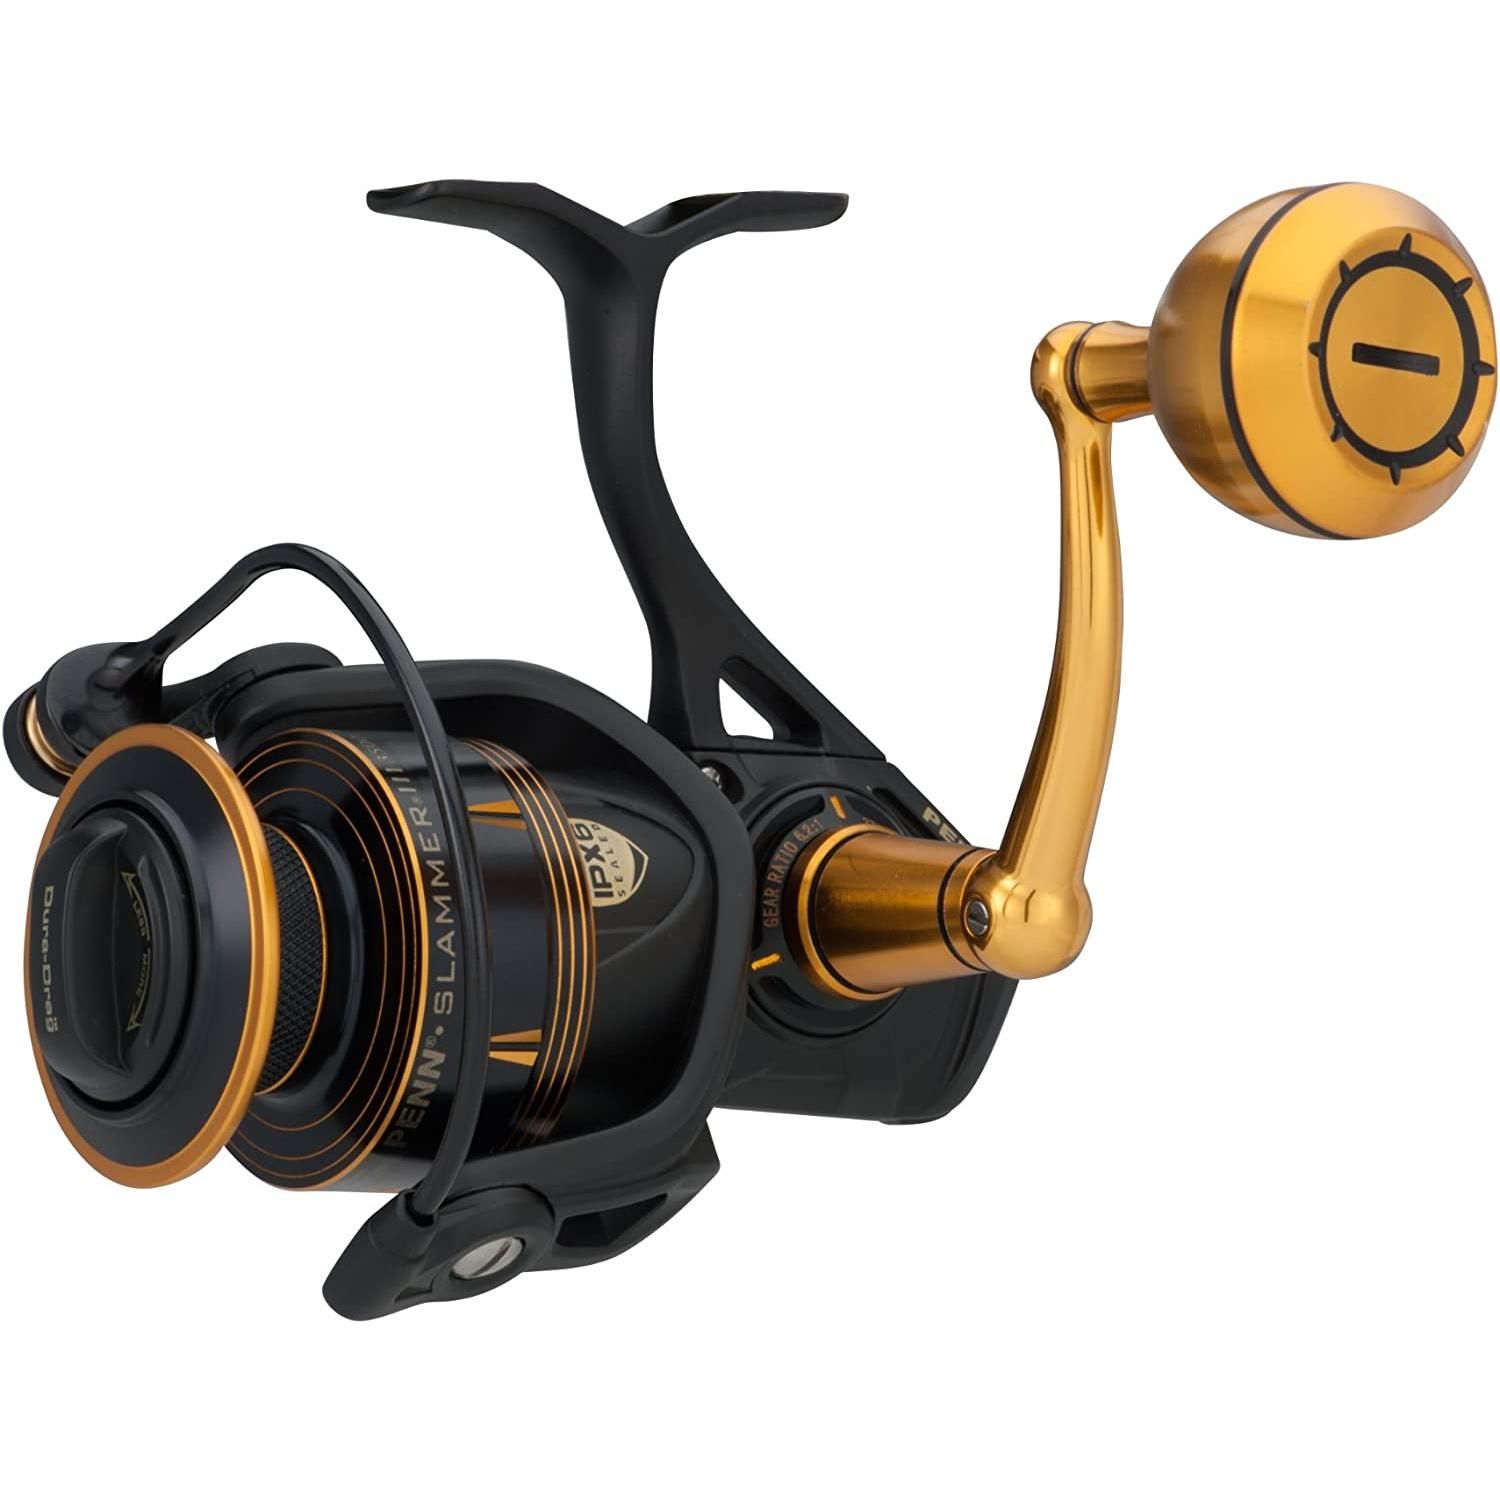 🅢🅖 🅢🅣🅞🅒🅚 Penn Slammer III Spinning Fishing Reel 9500, Sports  Equipment, Fishing on Carousell